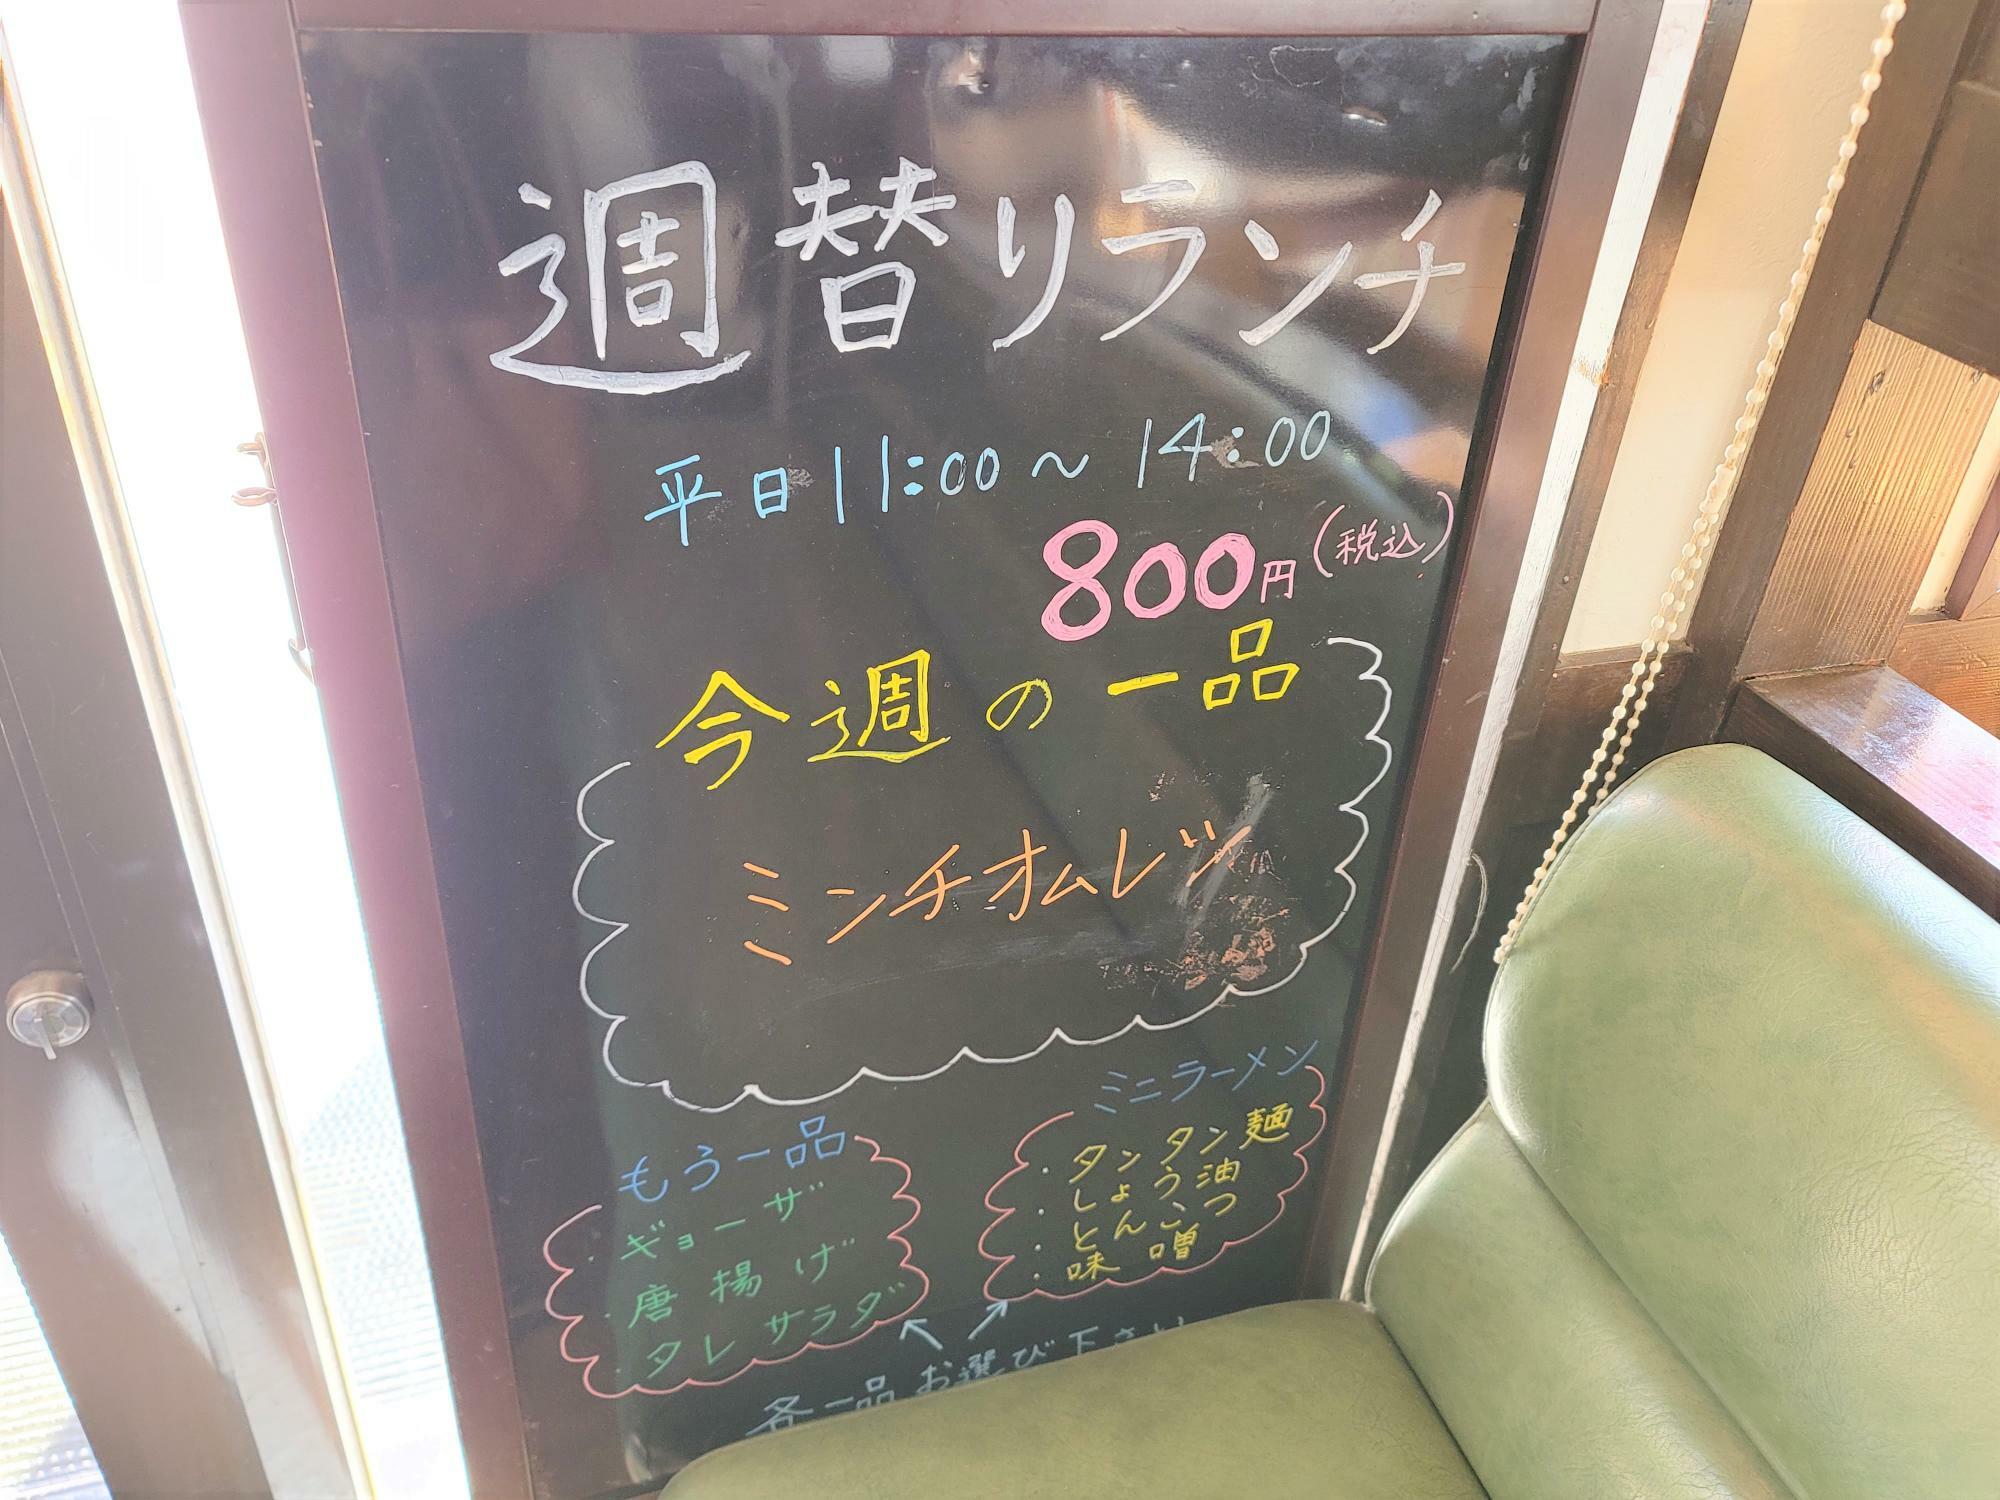 「熱烈タンタン麺 一番亭 田宮店」入口付近にある週替りランチについての告知物。